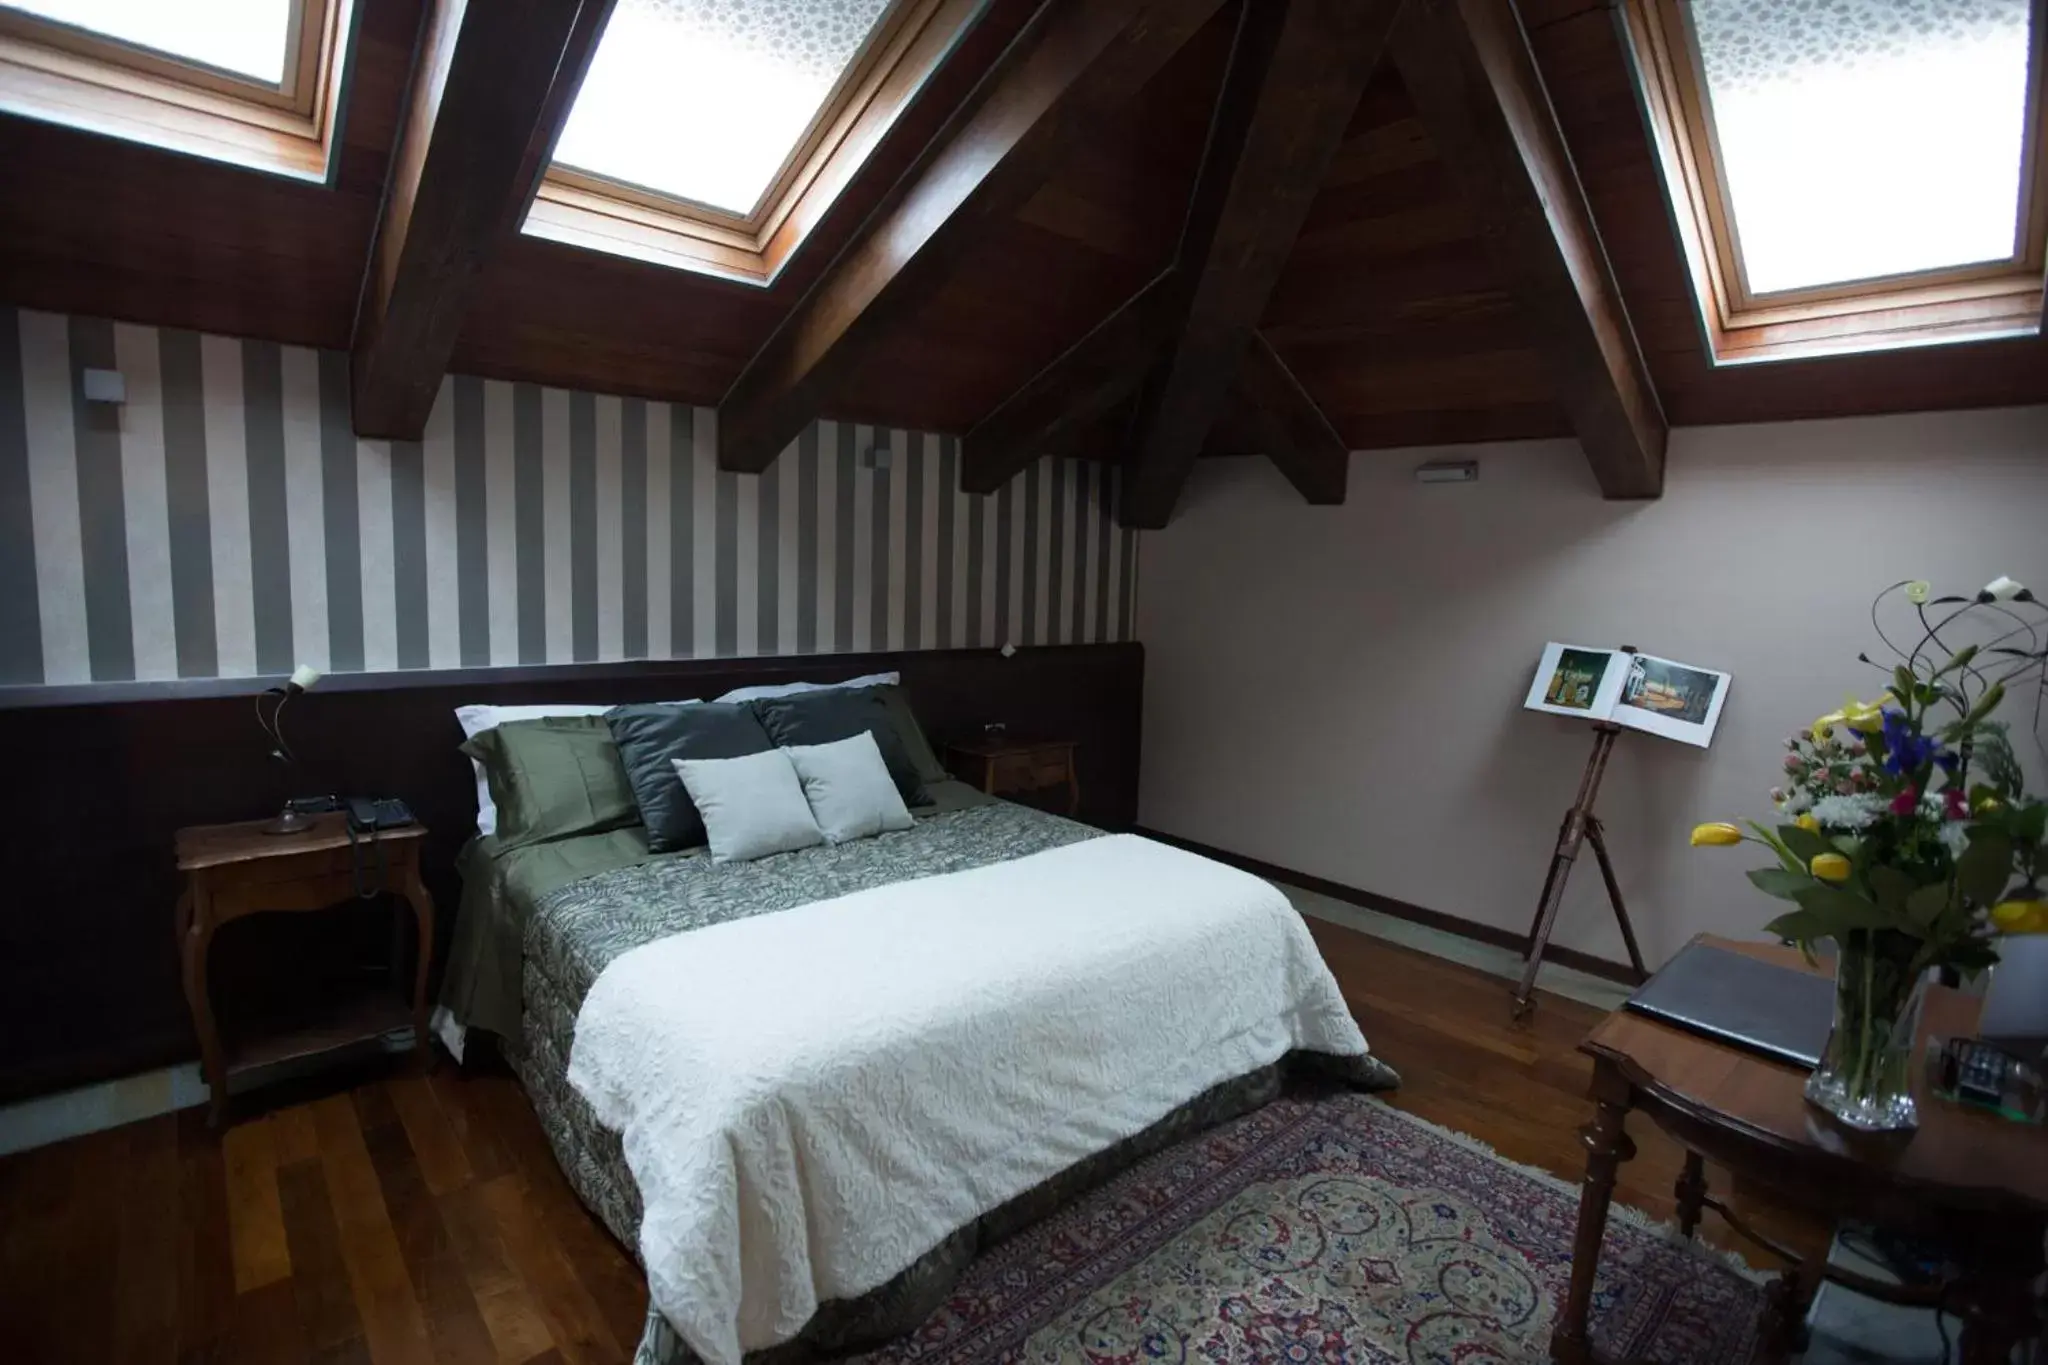 Bed, Room Photo in Hotel Dei Pittori